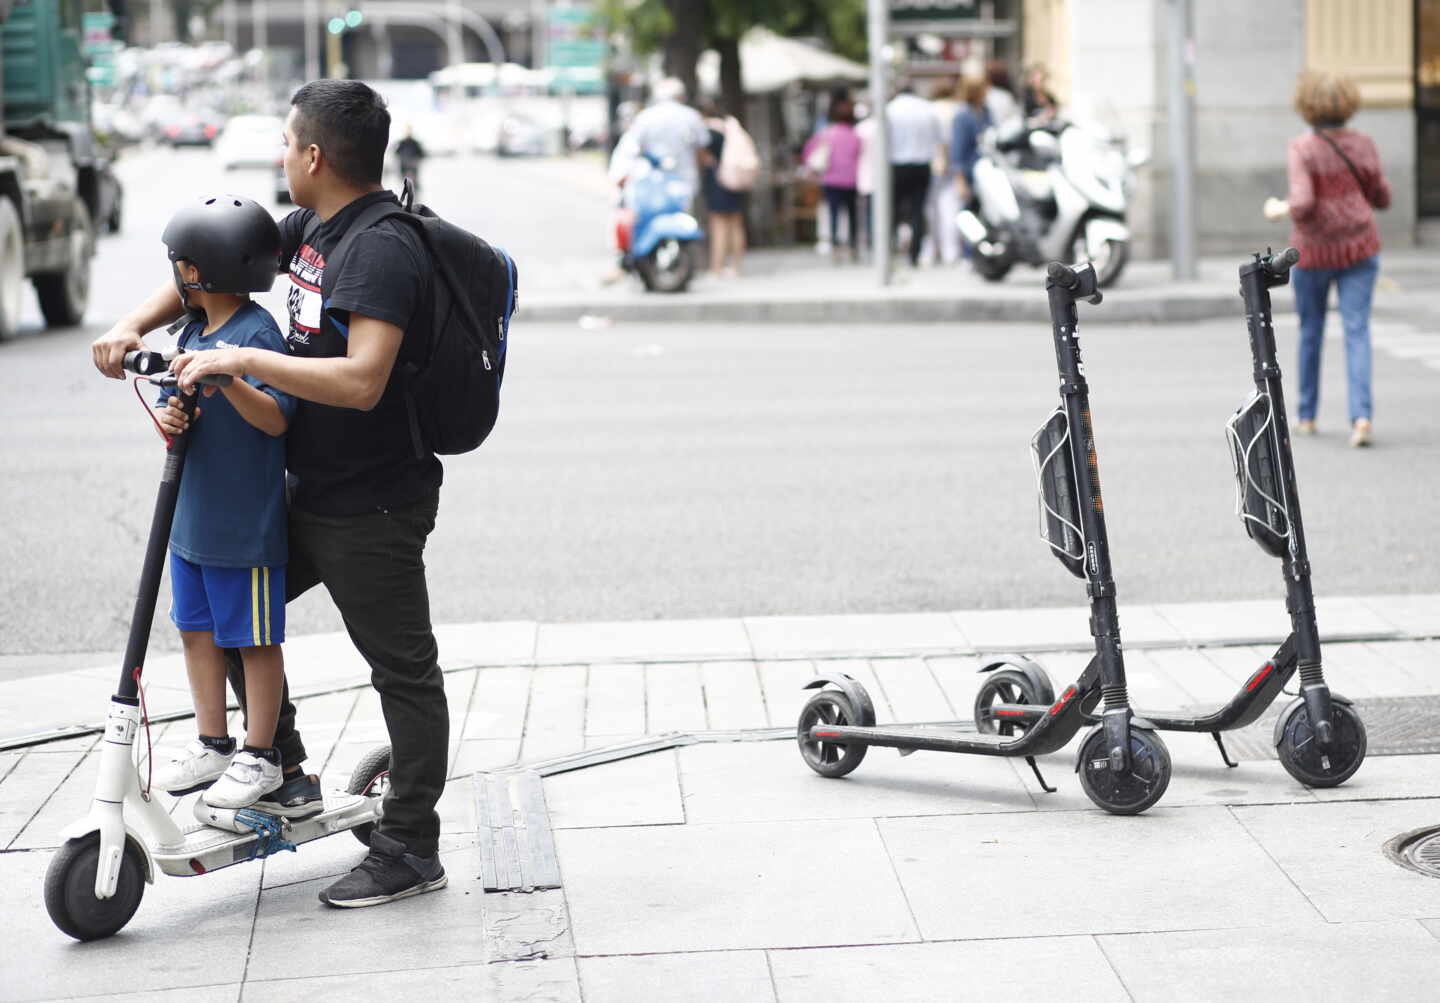 El patinete eléctrico, la sorpresa que ha revolucionado la movilidad urbana